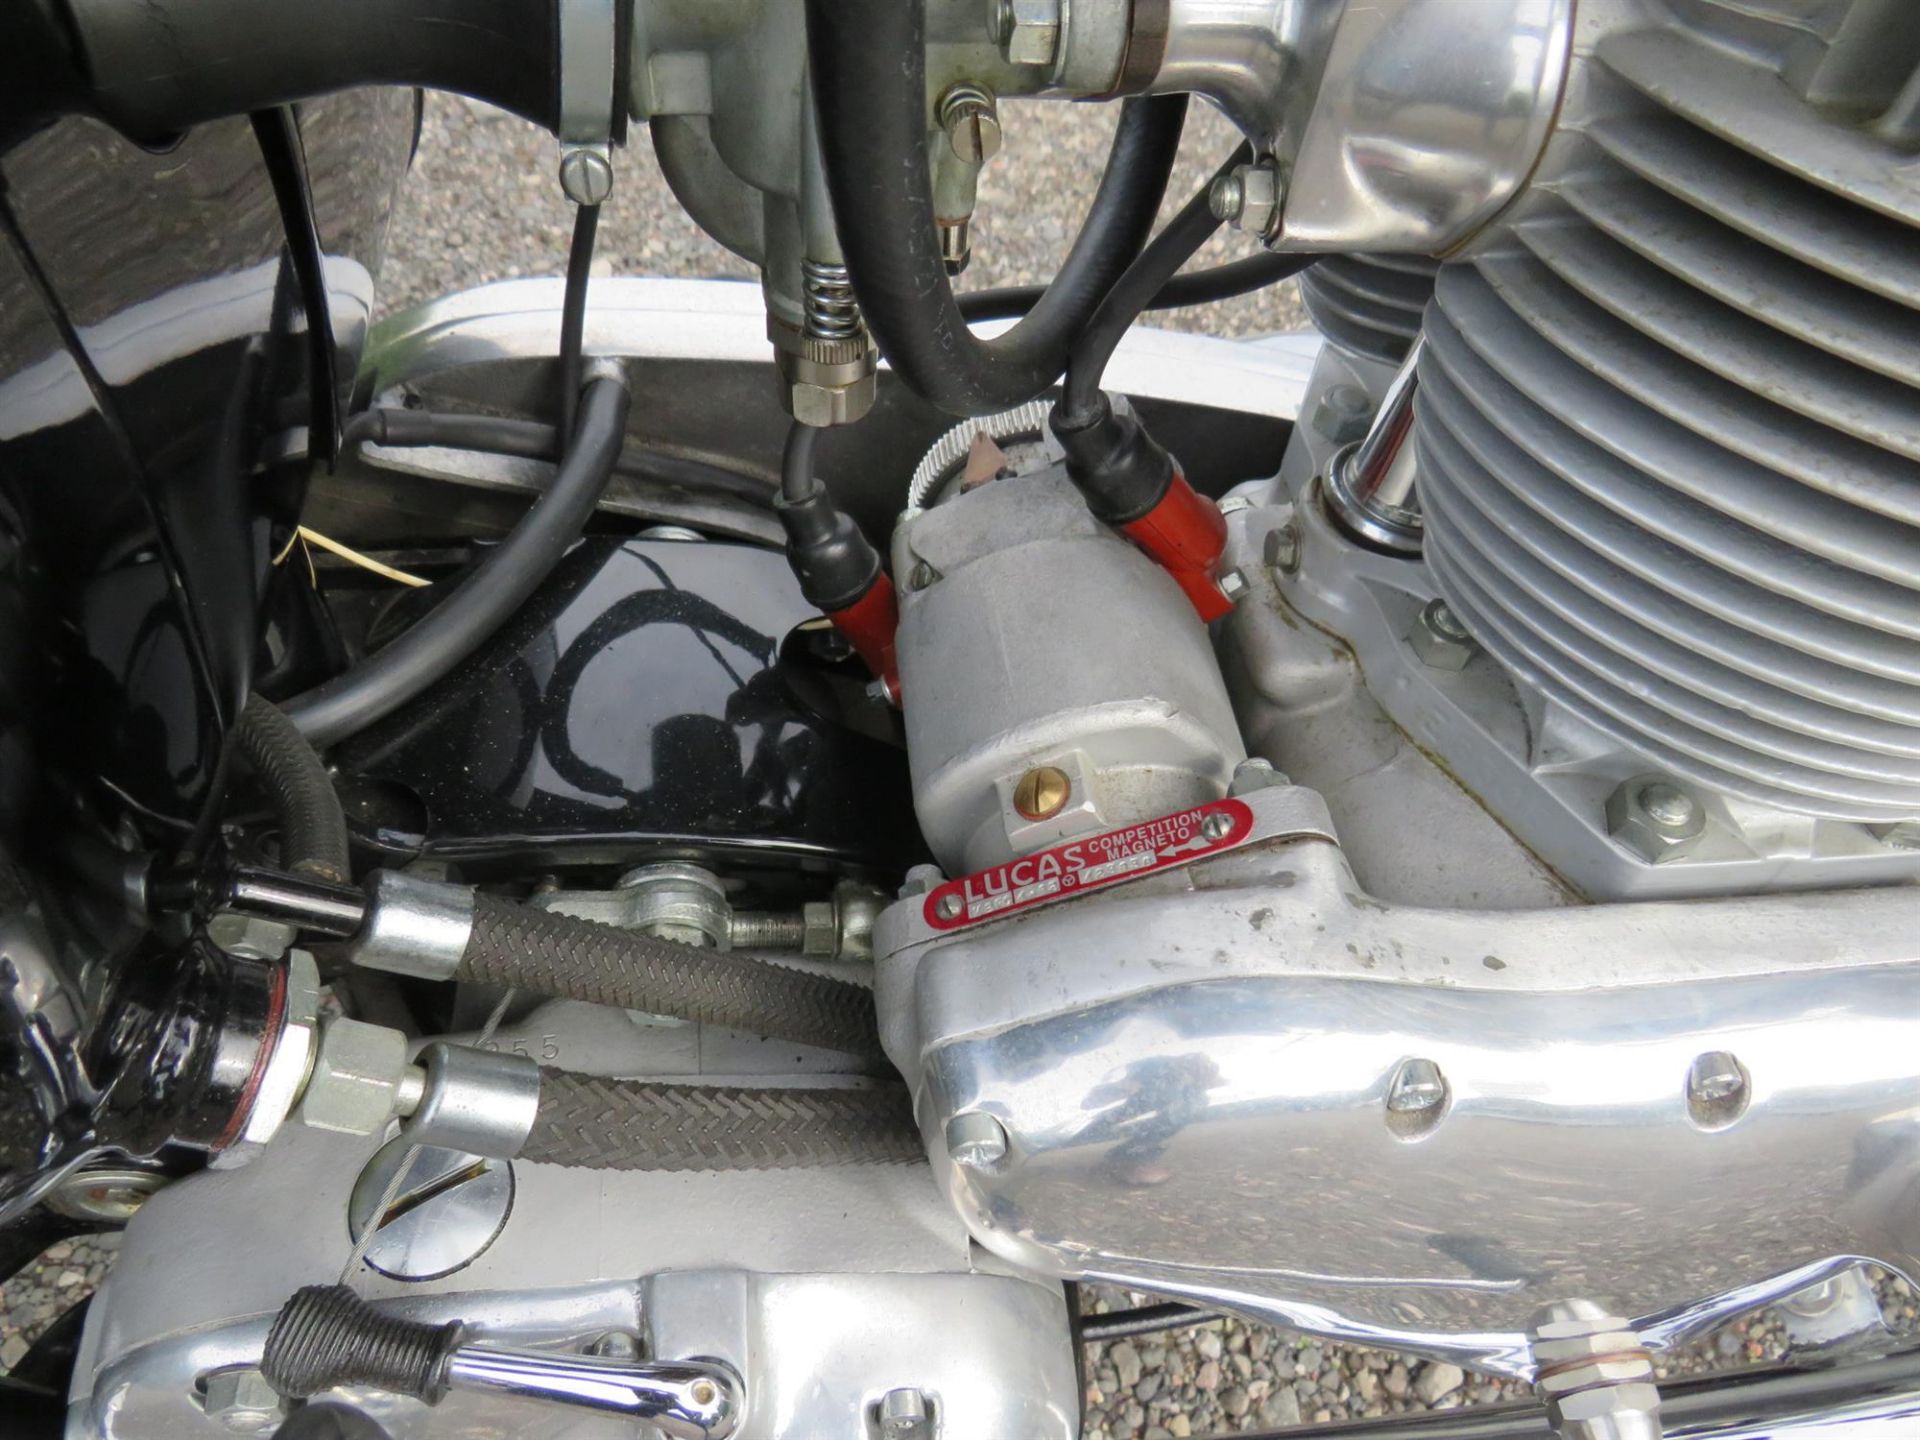 1962 Triumph TR6SS Trophy 649cc - Image 9 of 10